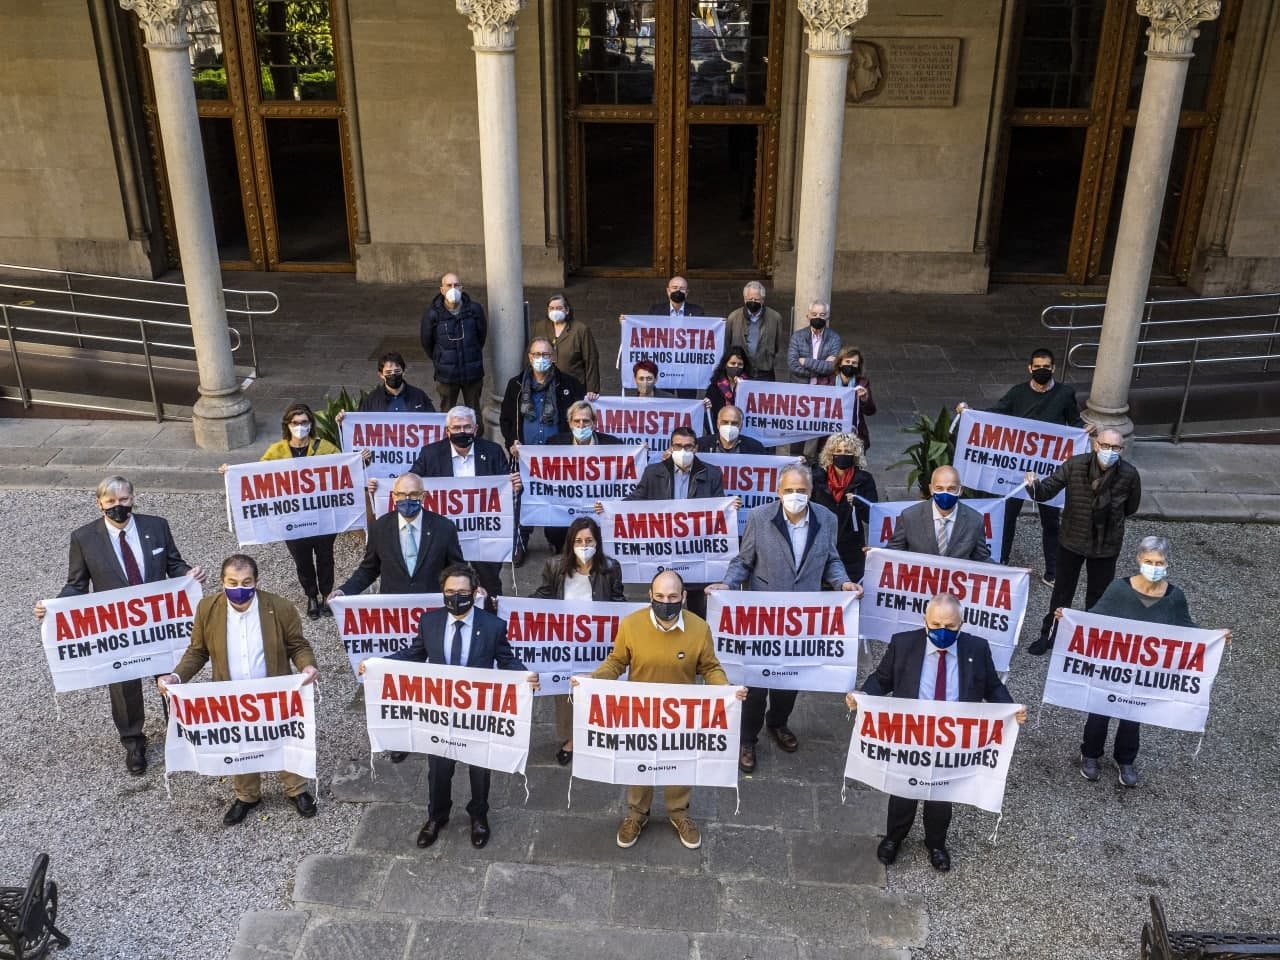 28/03/2021 Rectores de universidades públicas catalanas junto al vicepresidente de Òmnium, Marcel Mauri, en una acción para reclamar la amnistía para los presos del 1-O
POLITICA 
ÒMNIUM CULTURAL
